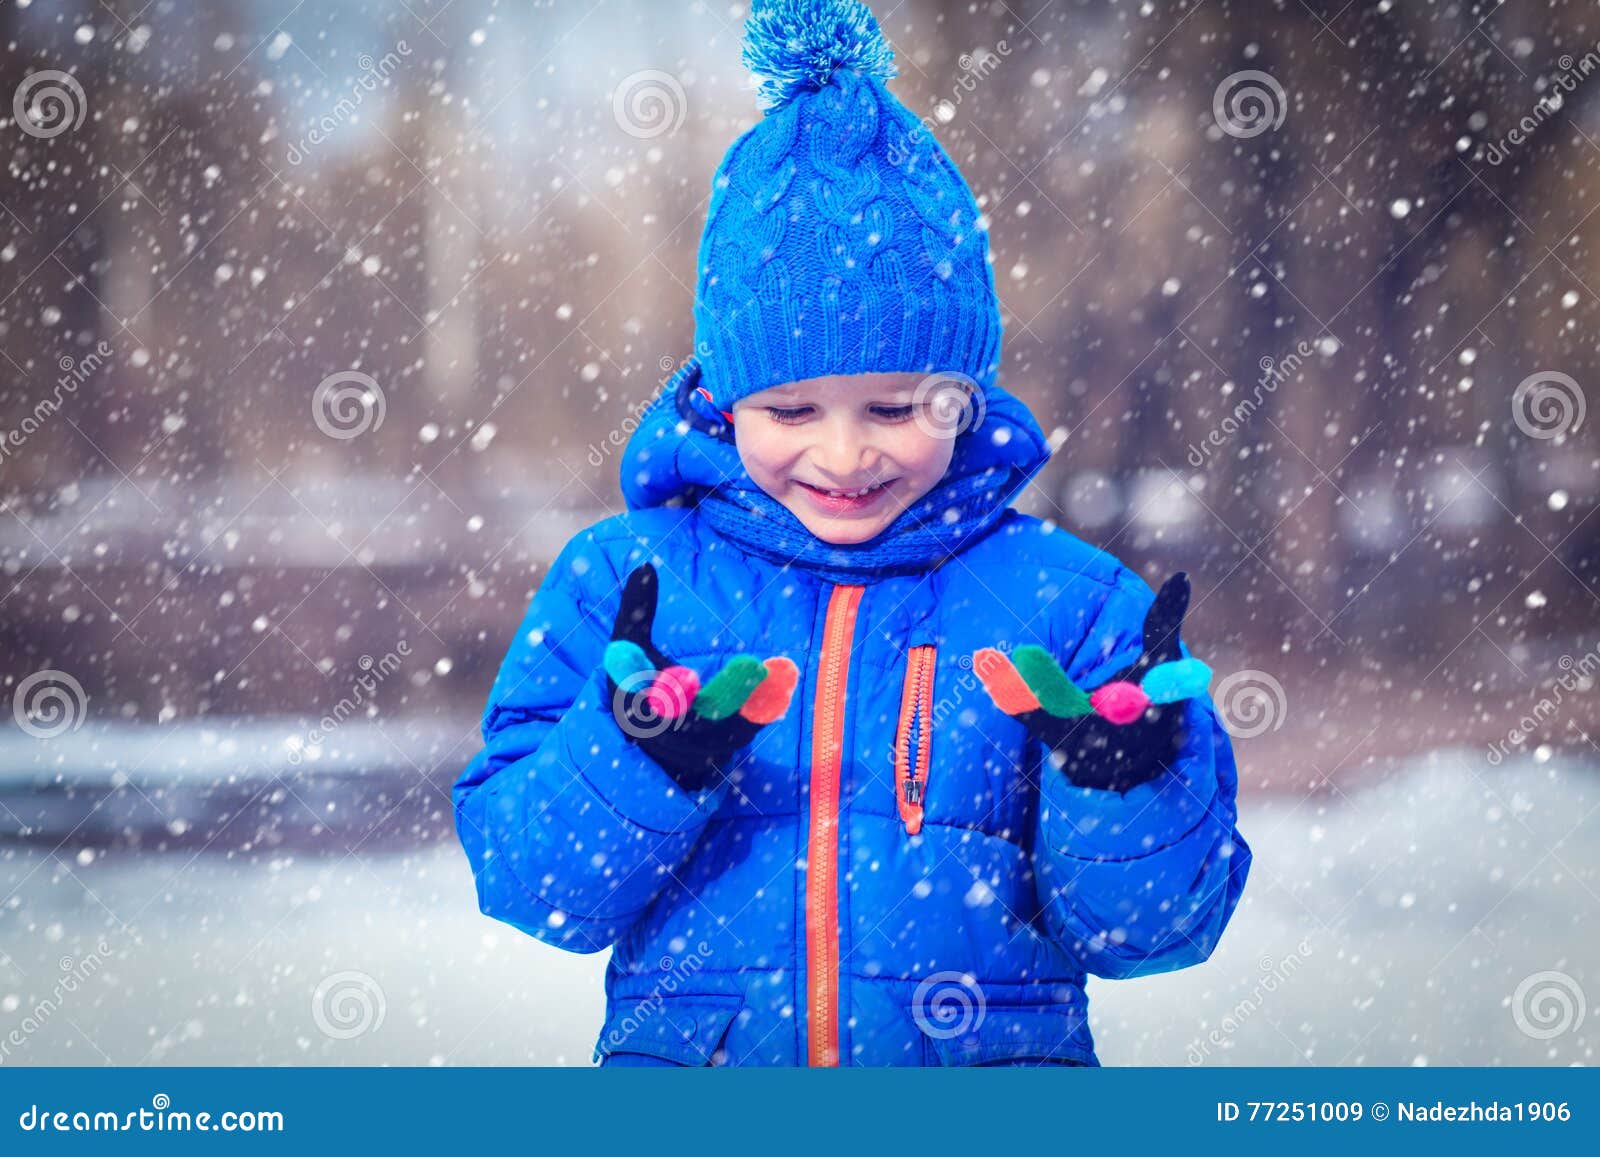 Маленькой девочке холодно. Природа зима для детей. It Snows in Winter for Kids.